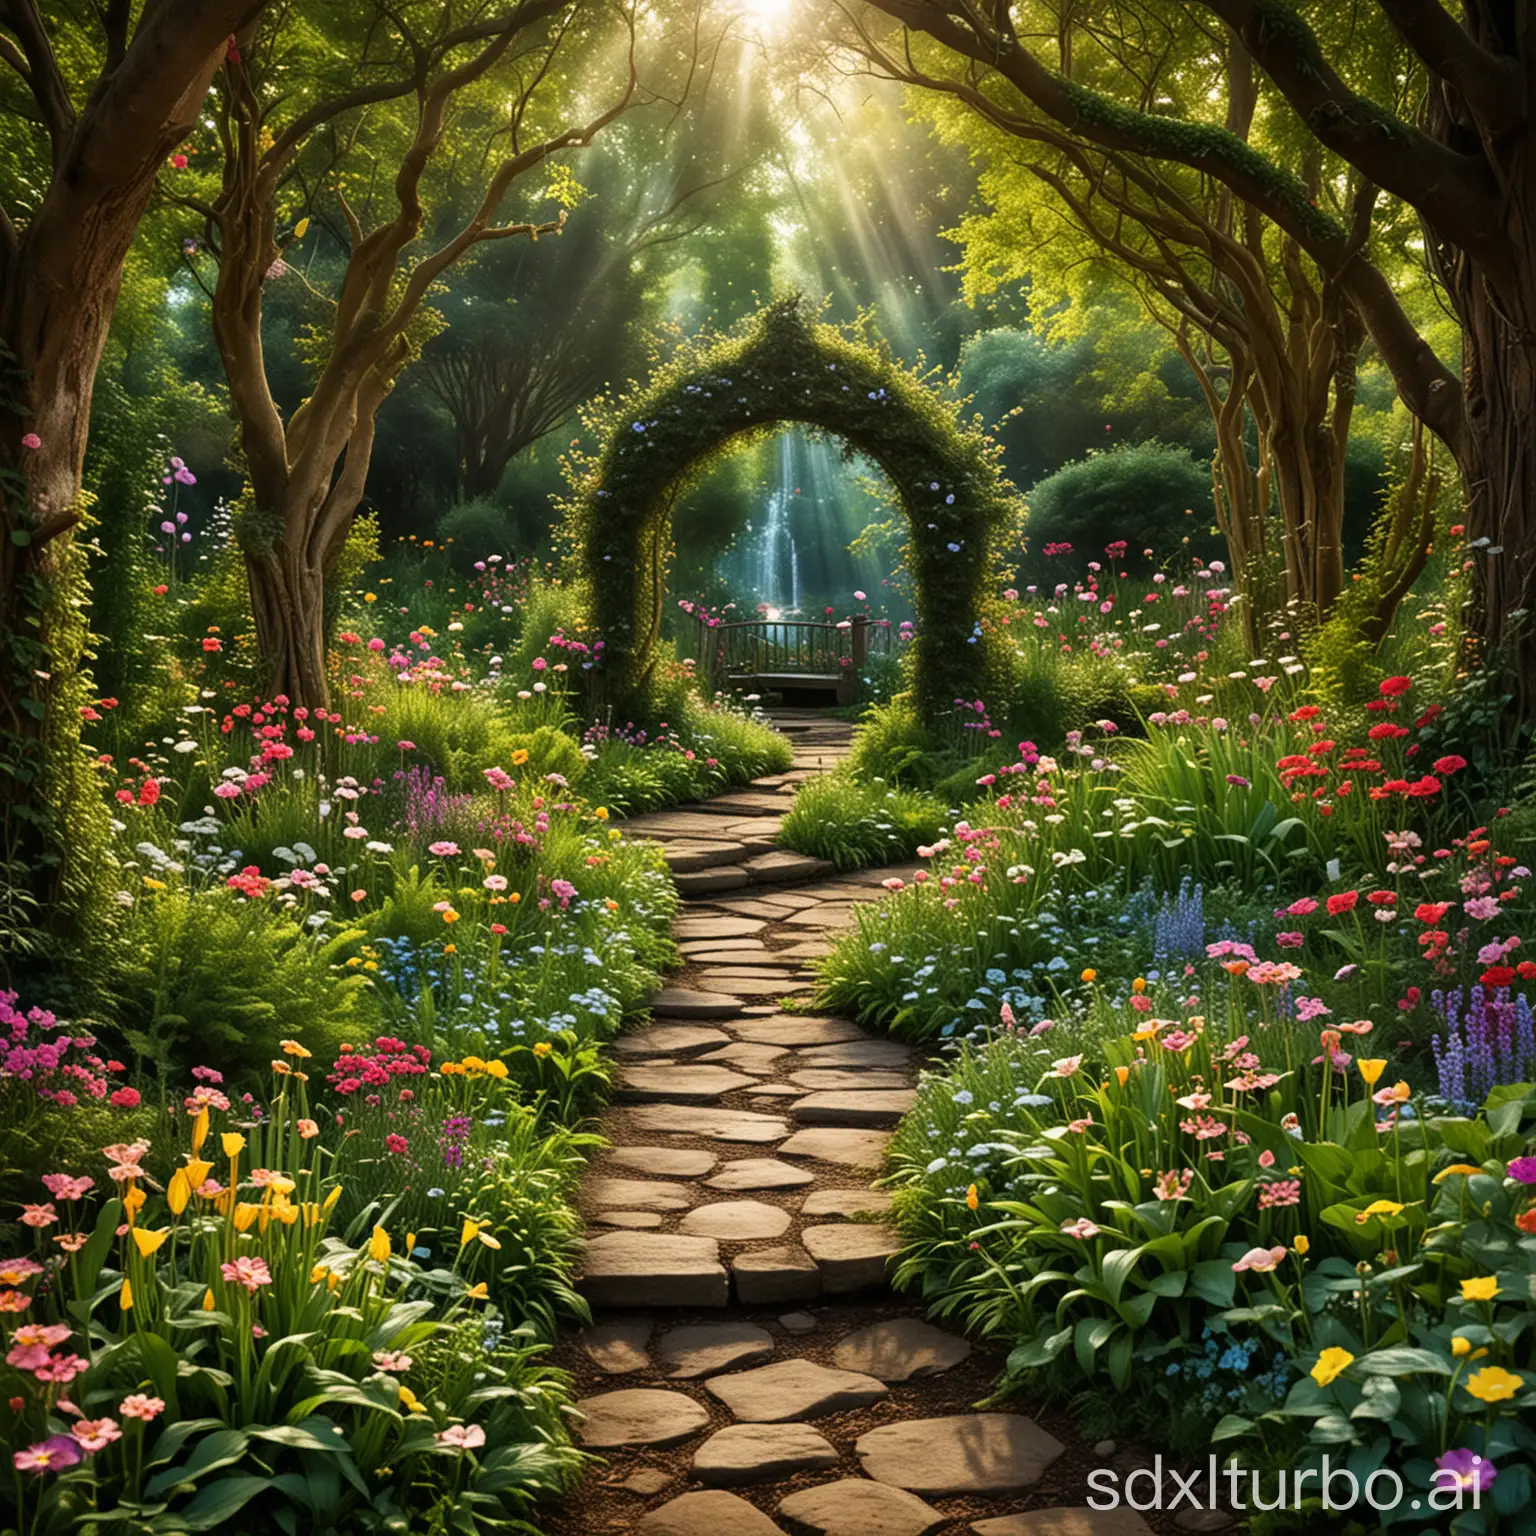 Enchanted garden